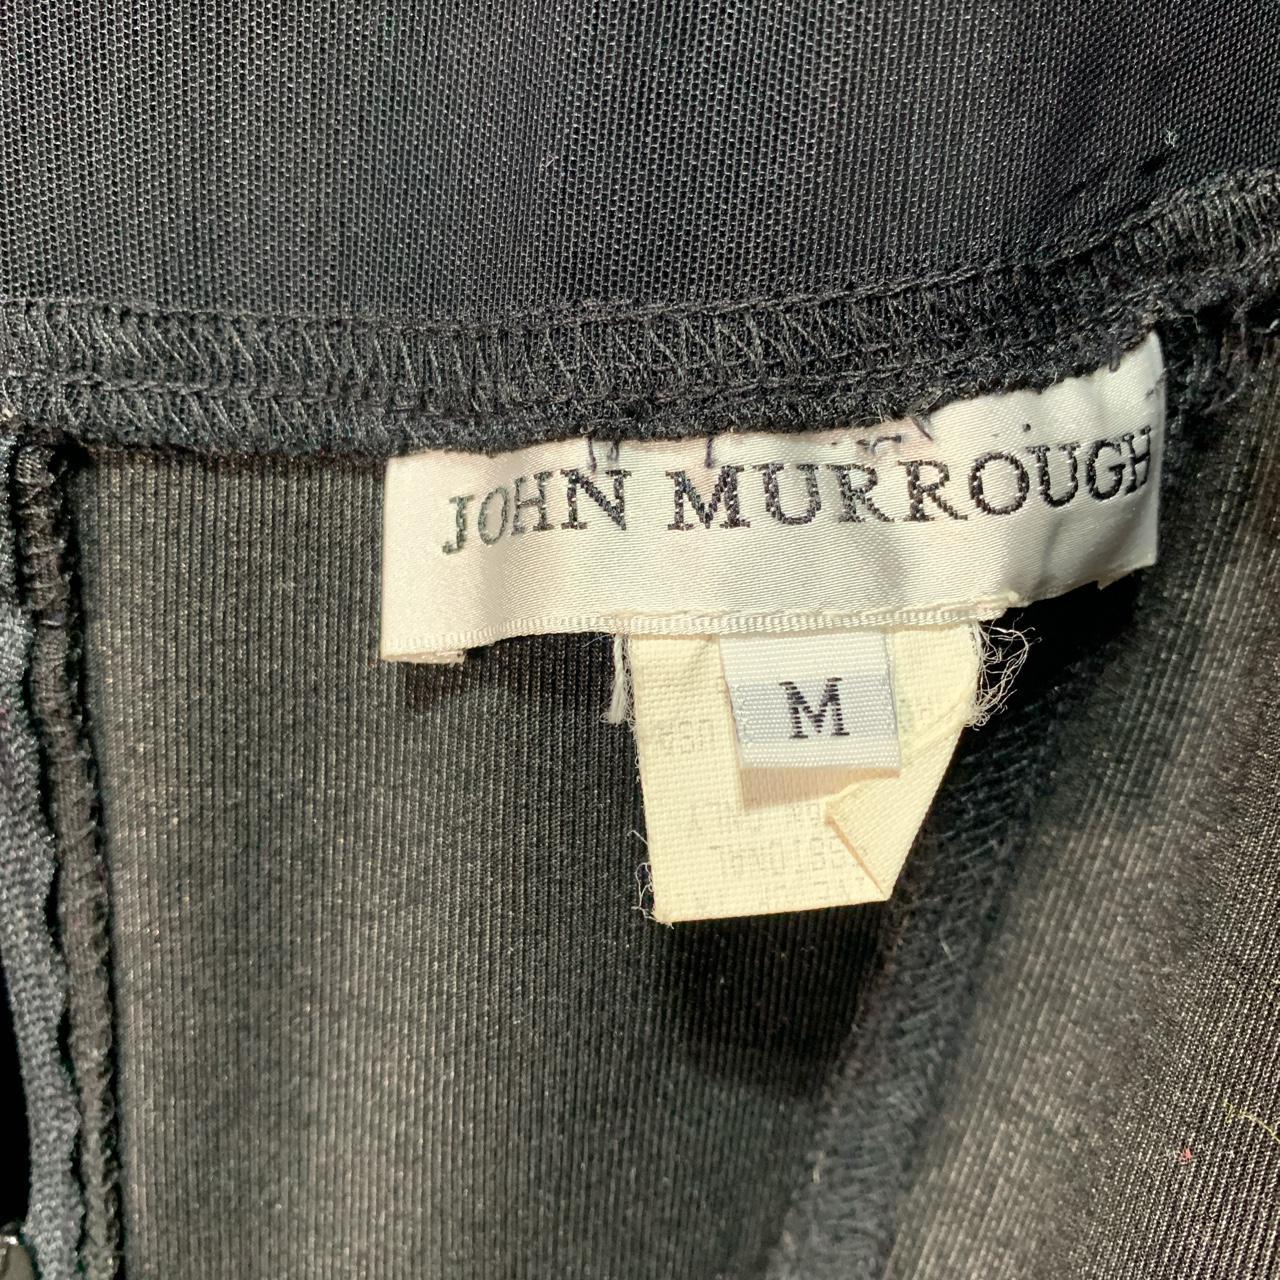 Vintage John Murrough drop waist dress Unique 2... - Depop